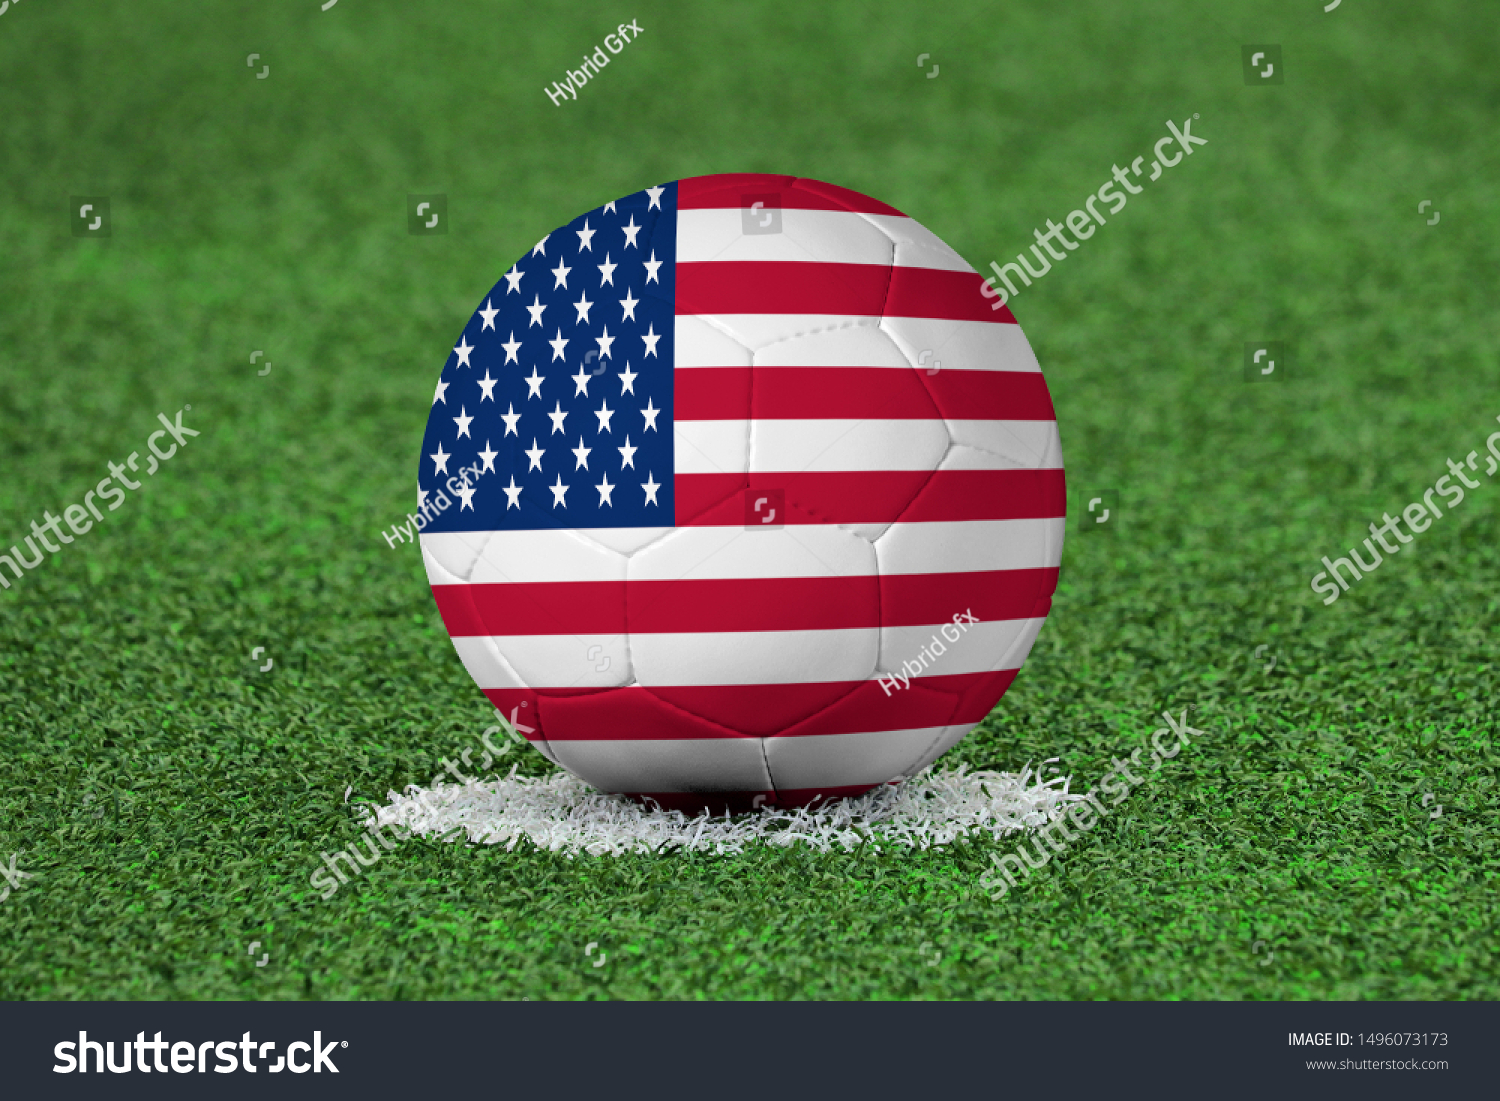 Flag of USA on Football USA Flag on soccer ball #1496073173